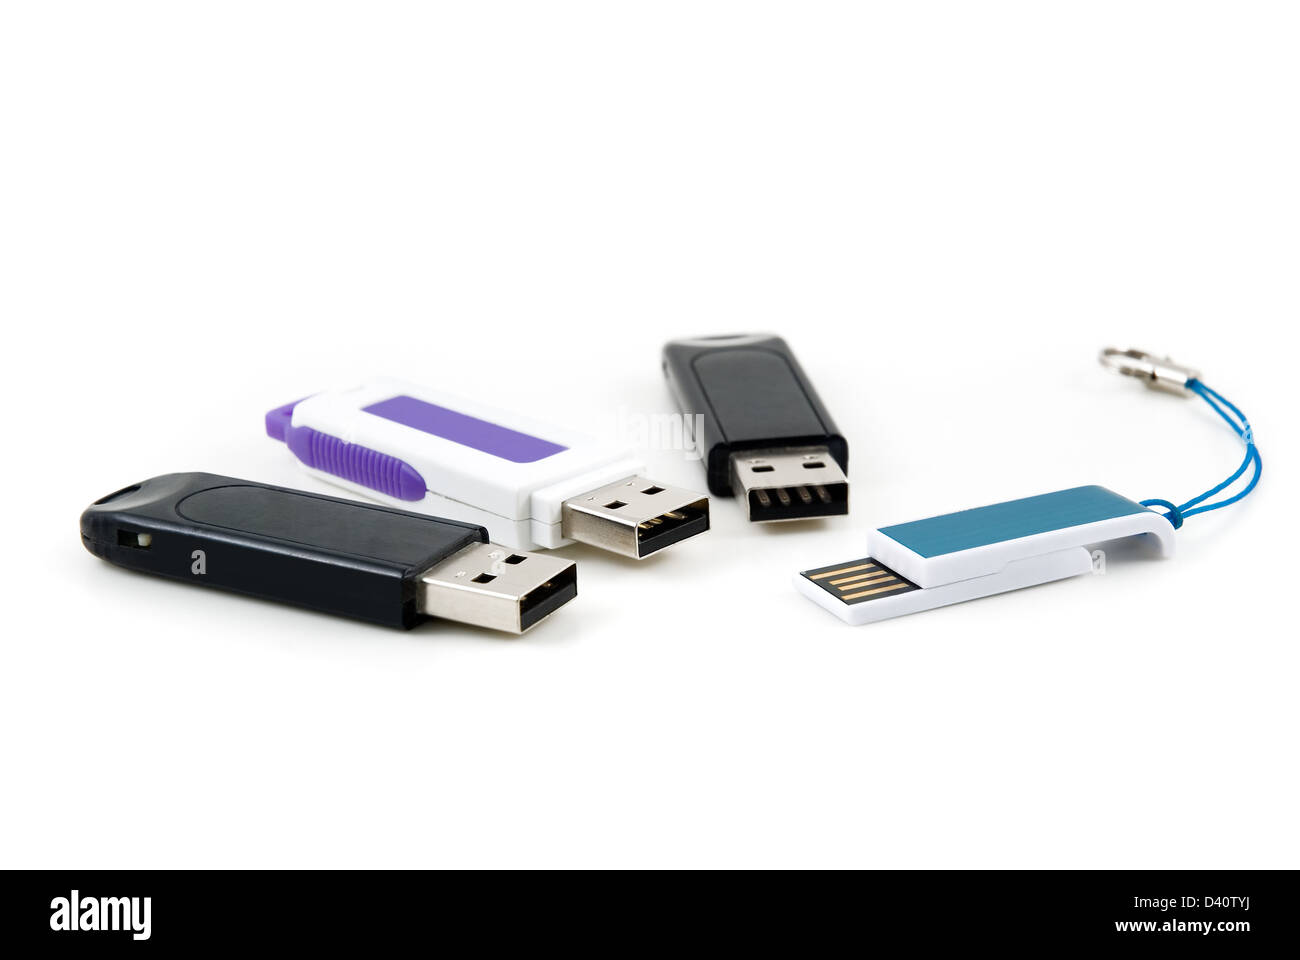 Les quatre de l'appareil de mémoire flash USB pour sont photographiés close-up Banque D'Images